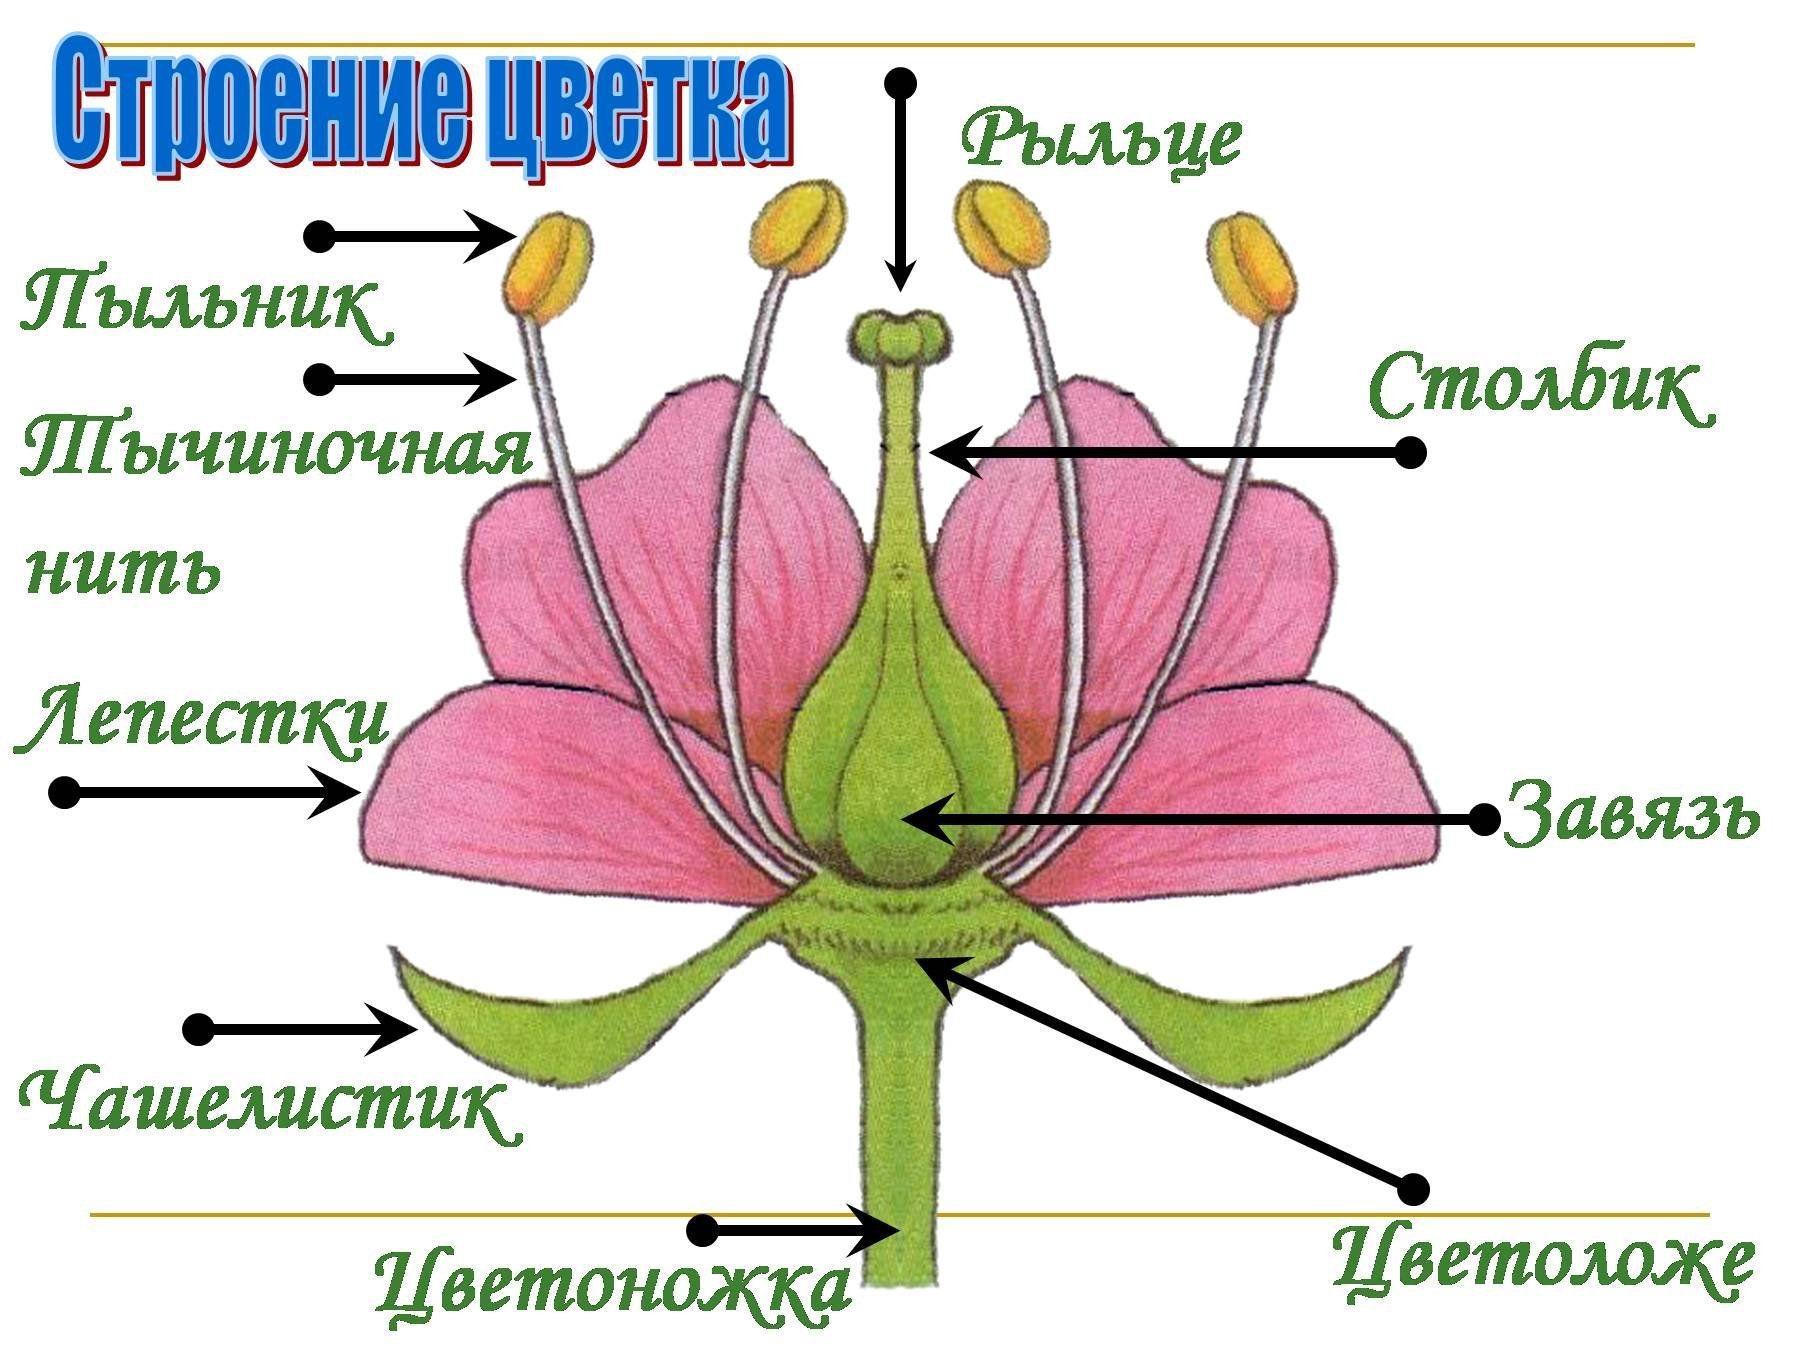 Егэ генеративные органы. Схема строения цветка 6 класс биология. Схема цветка биология 6 класс. Строение цветка 6 класс биология рисунок из учебника. Строение цветка покрытосеменных растений.